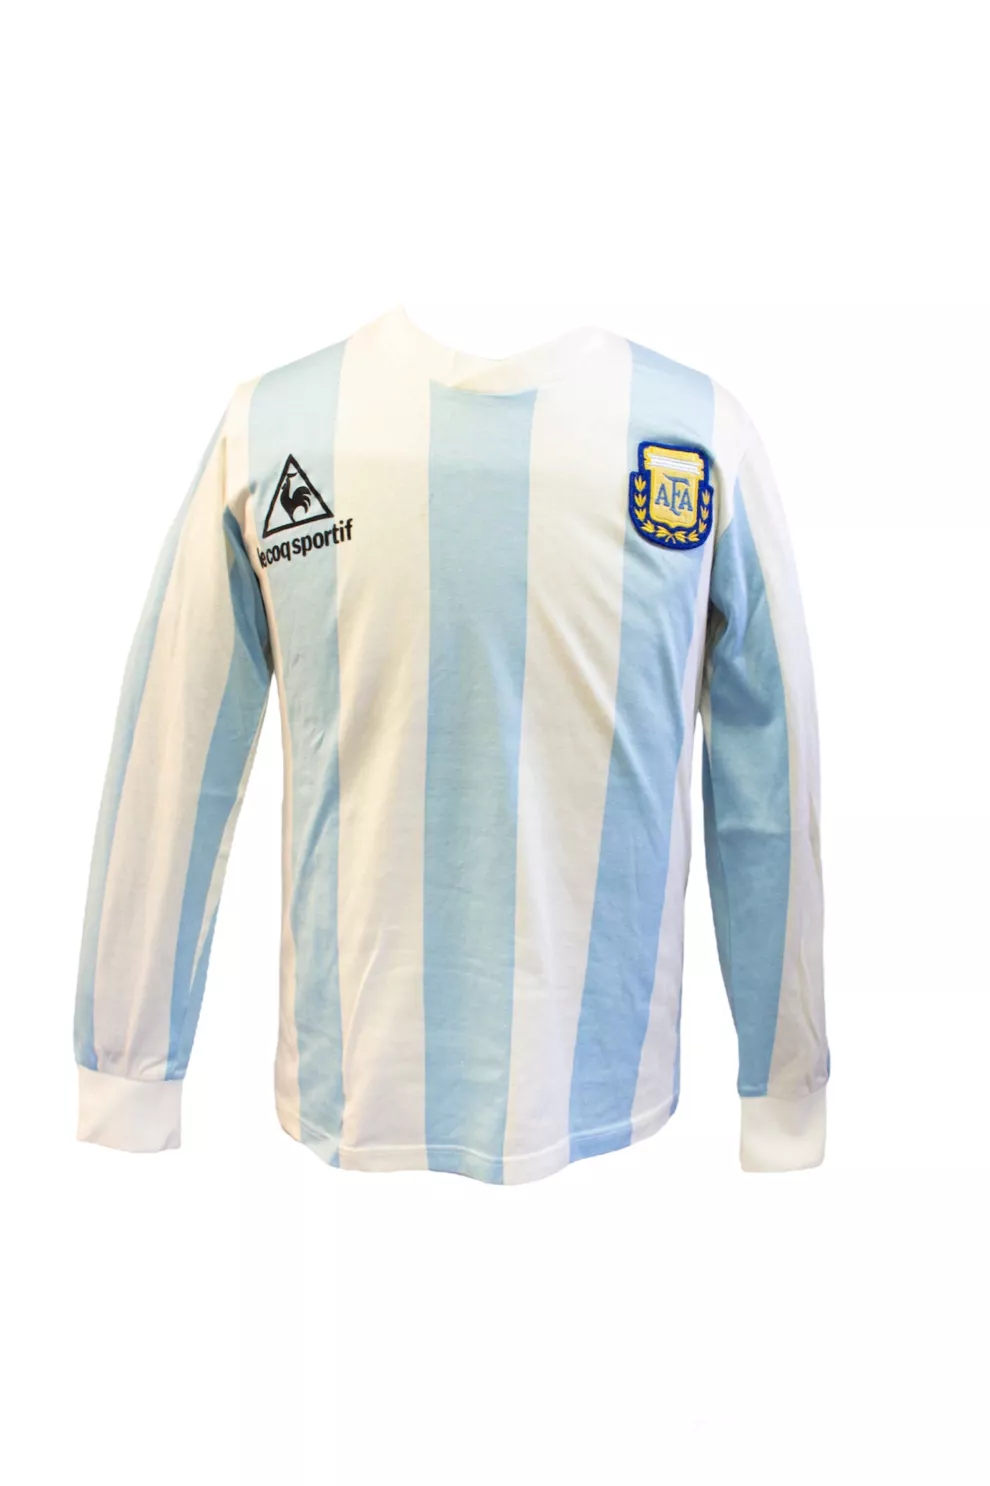 Camiseta de Diego Armando Maradona (1989)